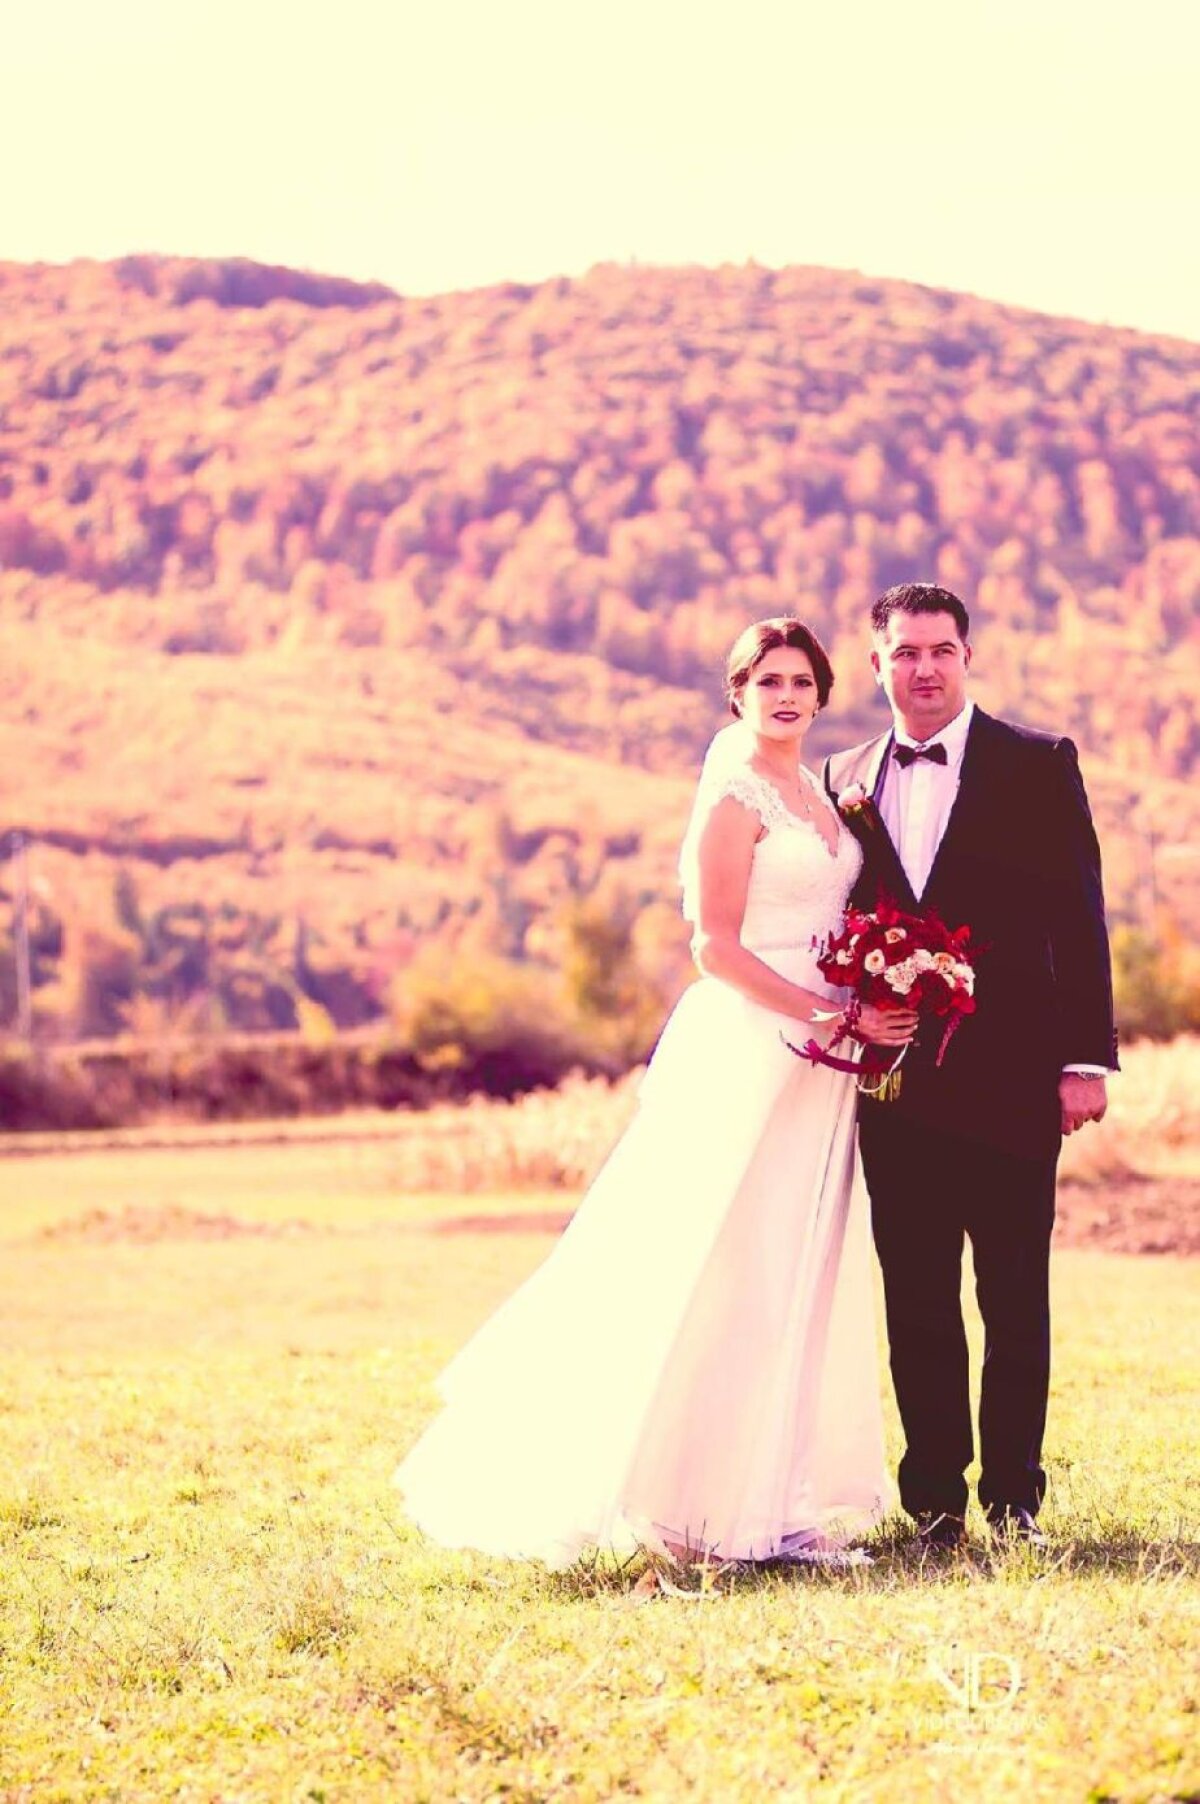 FOTO Nuntă cu campioane » Canotoarele din lotul național al României au participat la nunta Andreei Boghian